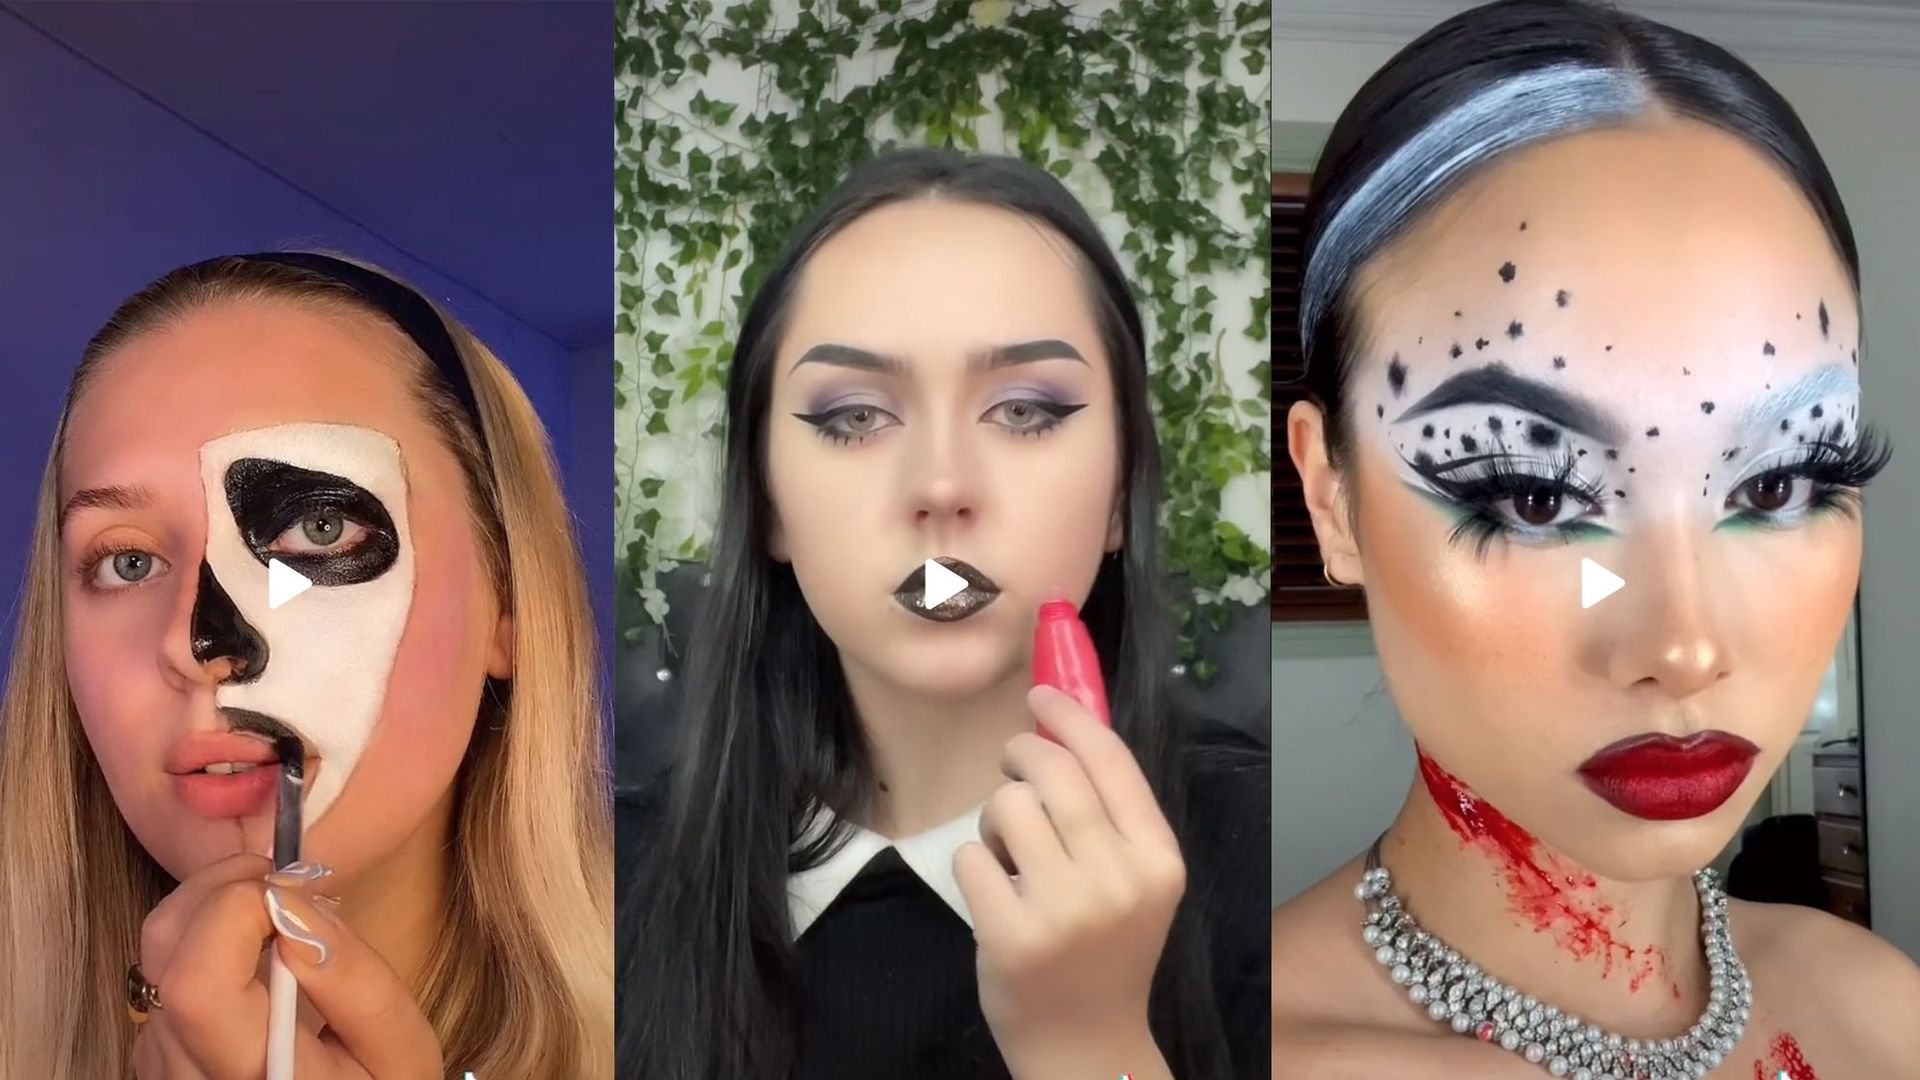 Le TikTok beauté de la semaine : un make-up glaçant pour Halloween.